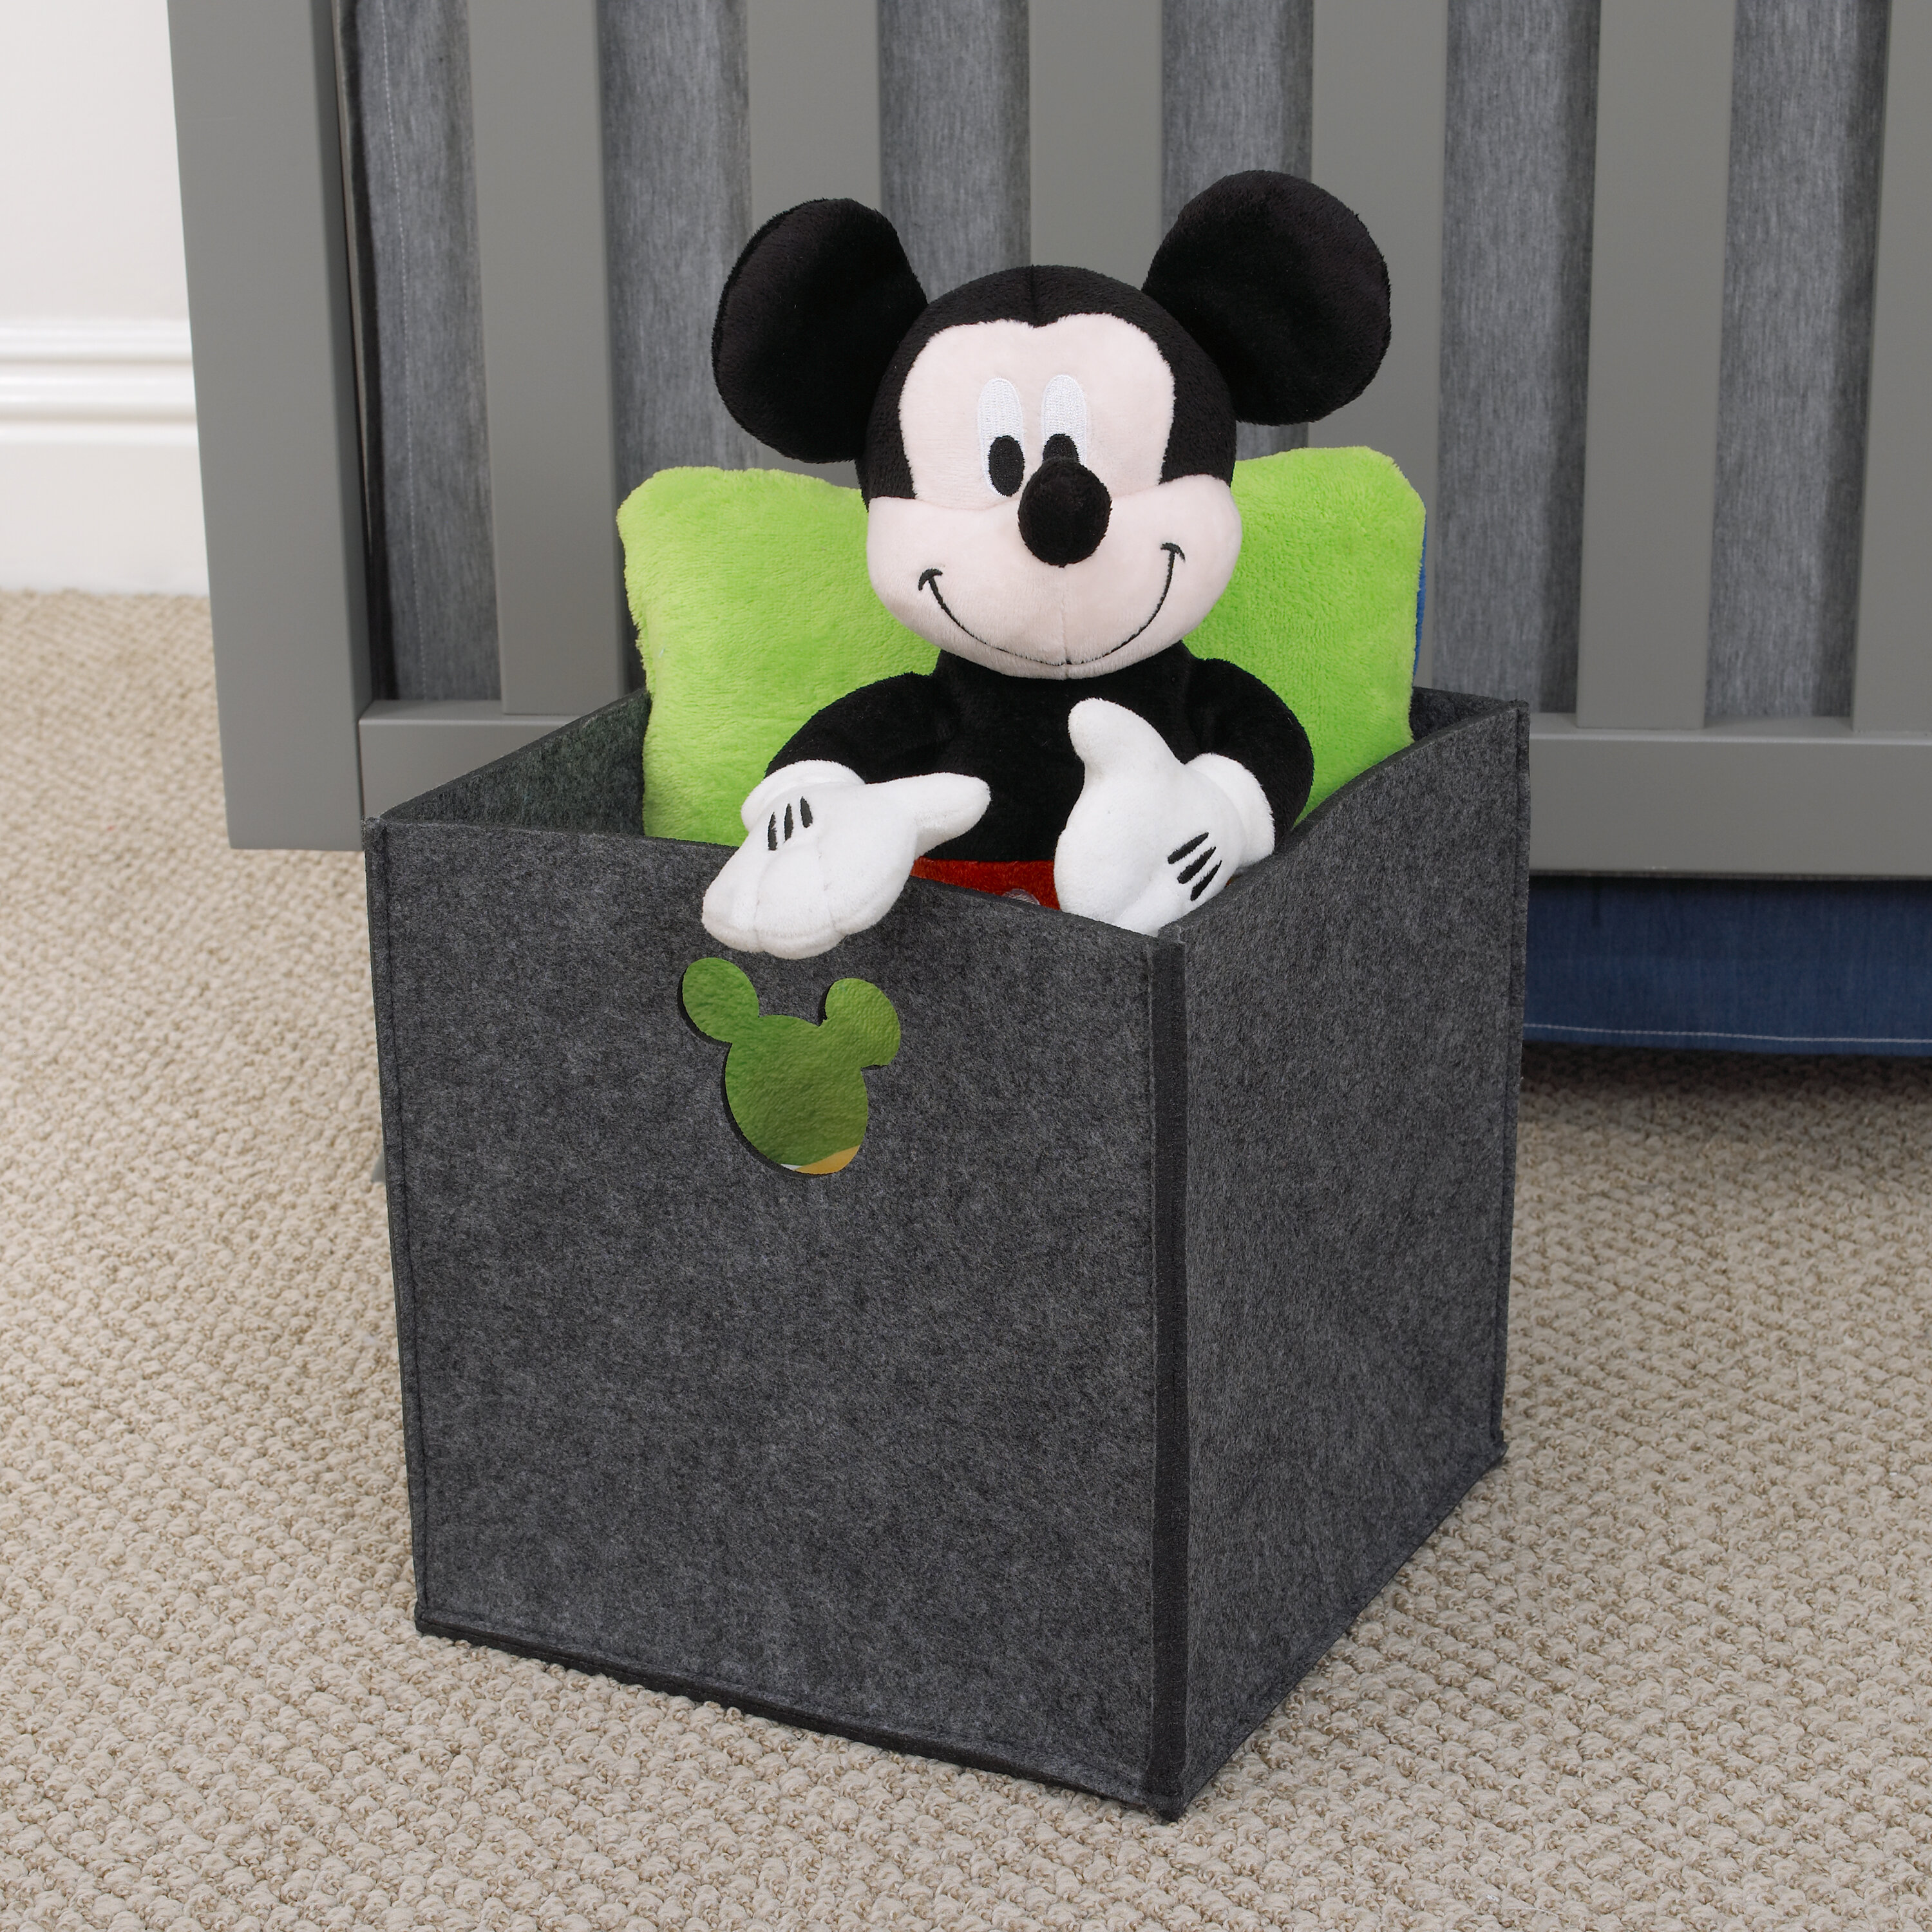 Disney Die Cut Storage Organizer Mickey Plastic Cube or Bin